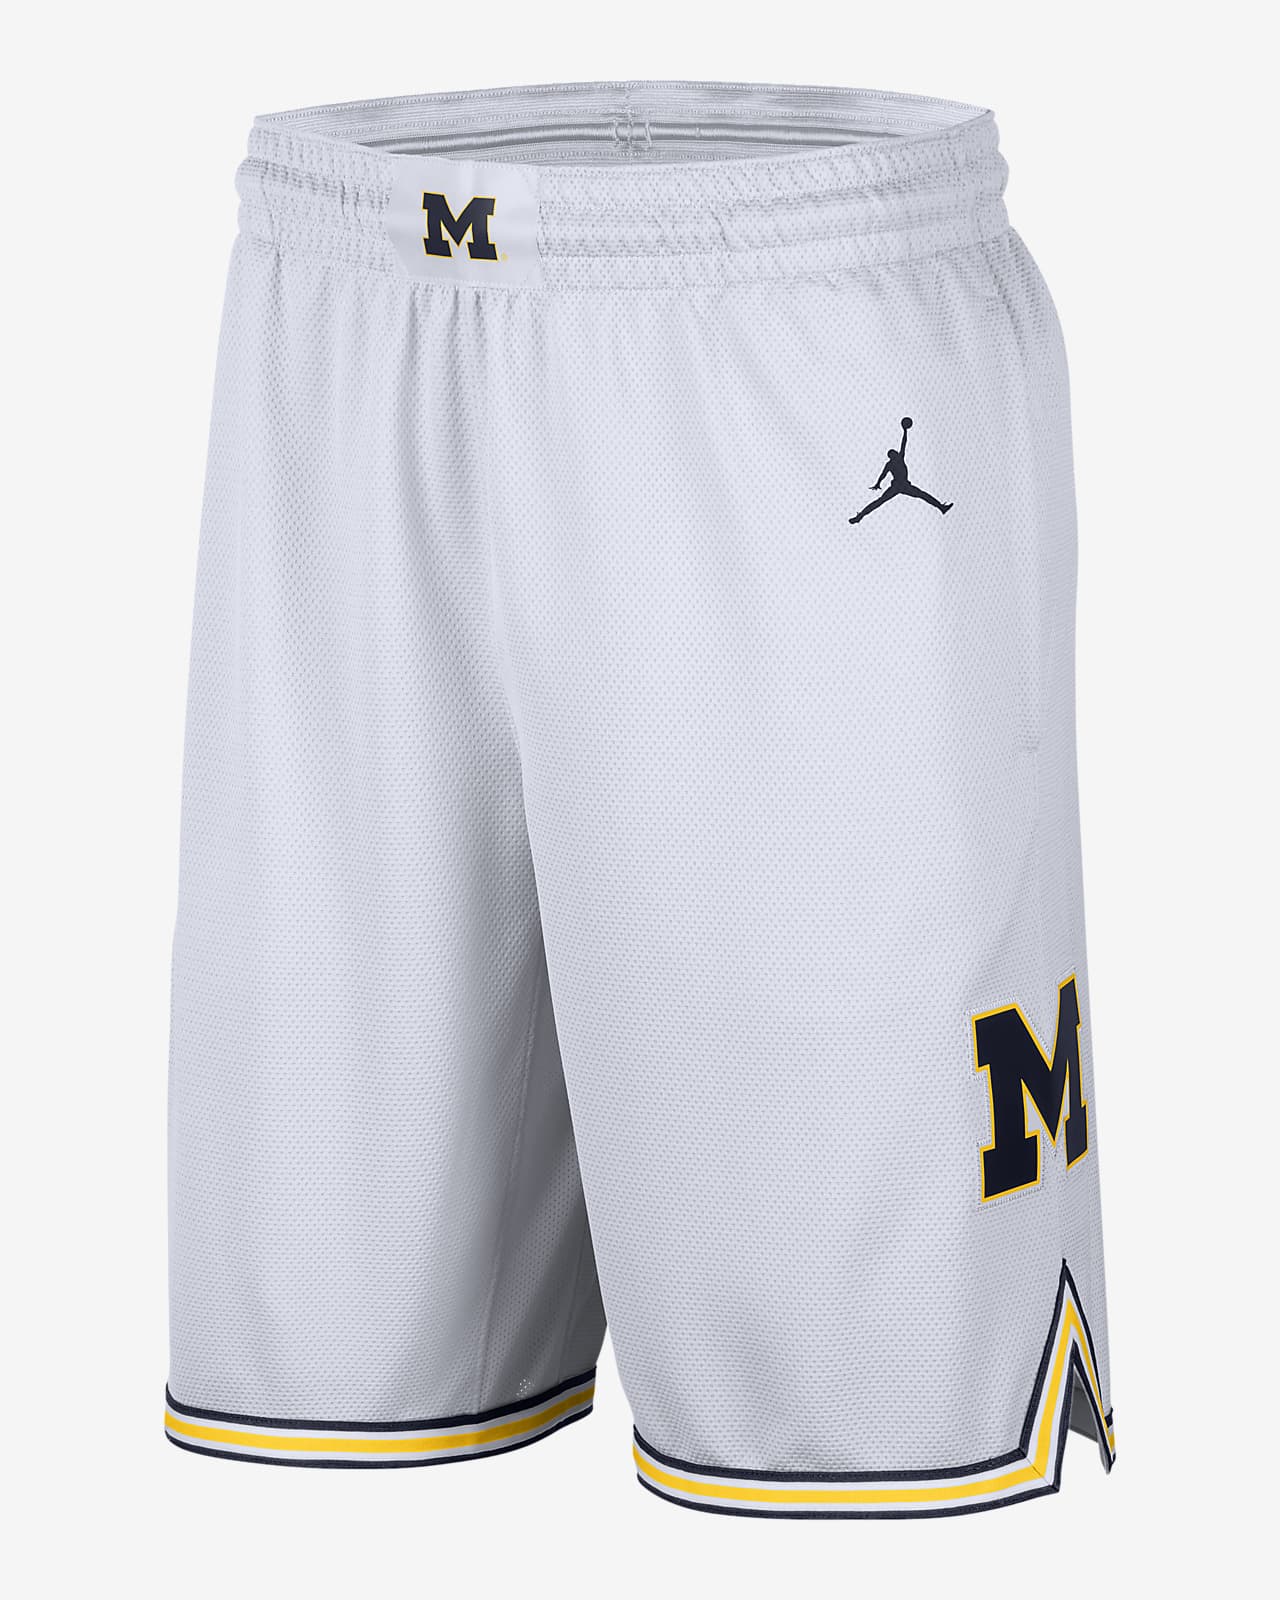 Men's Replica Basketball Shorts. Nike.com